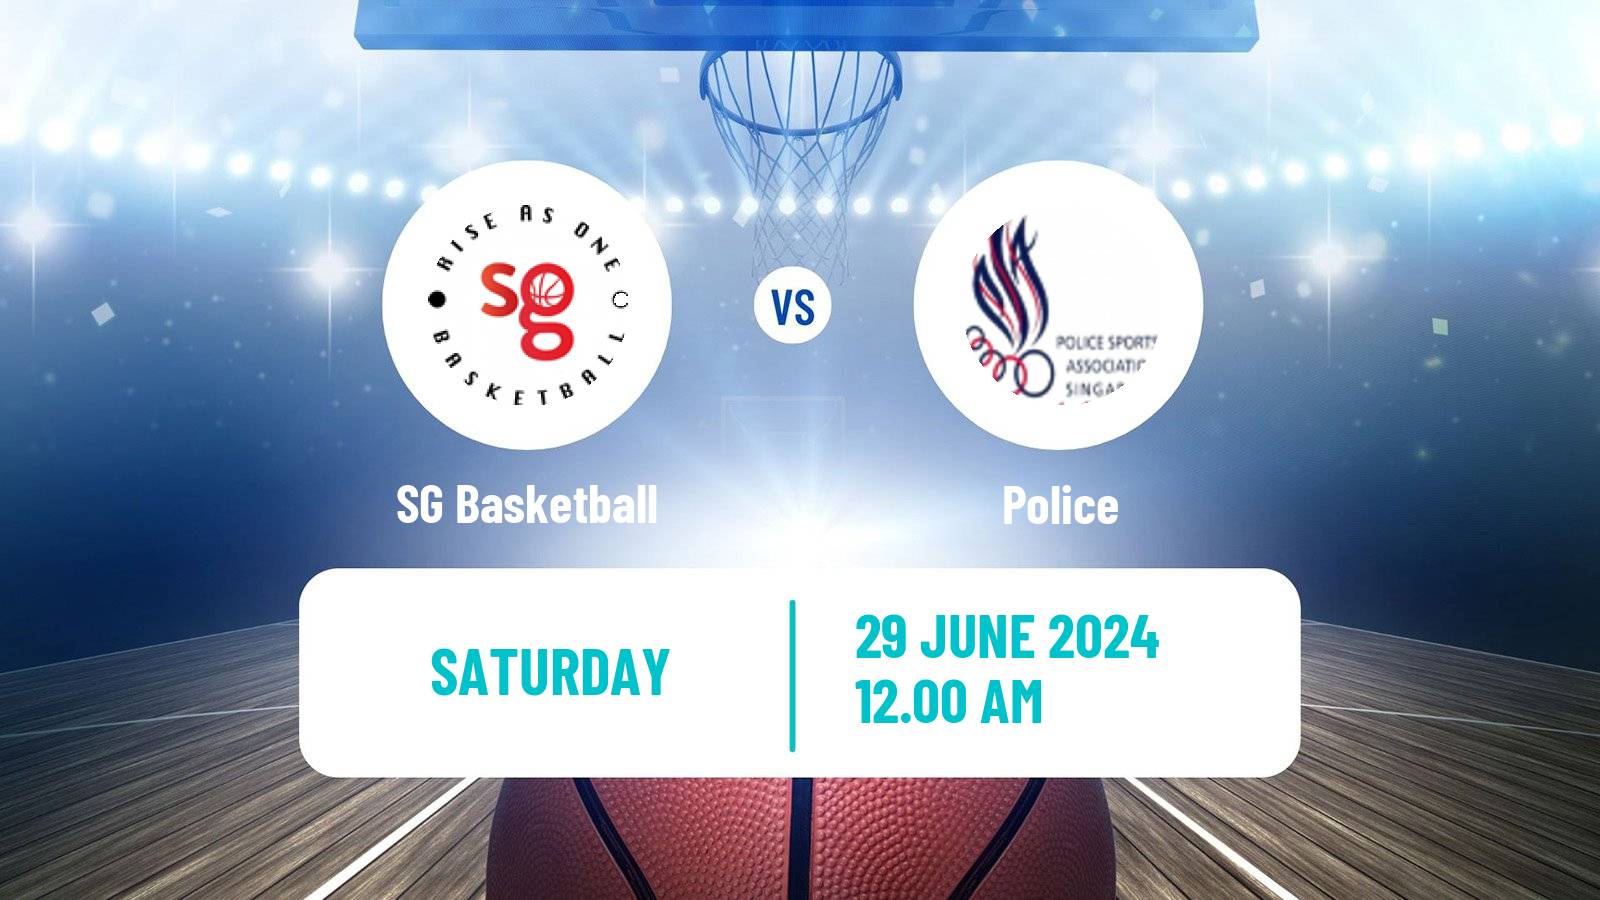 Basketball Singapore NBL SG Basketball - Police